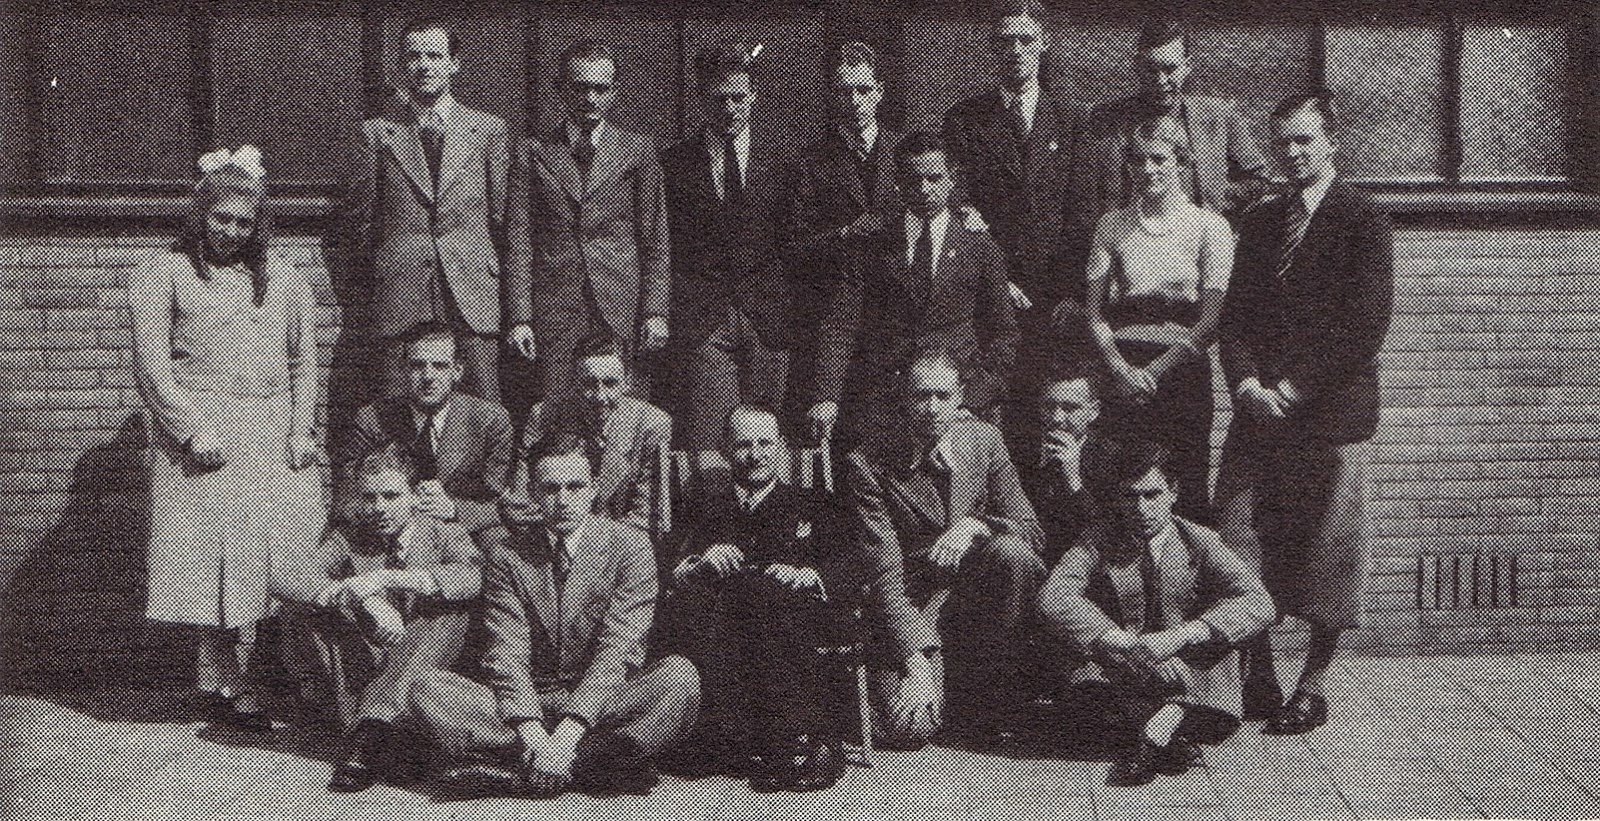 Klassenfoto uit de periode 1930-1940